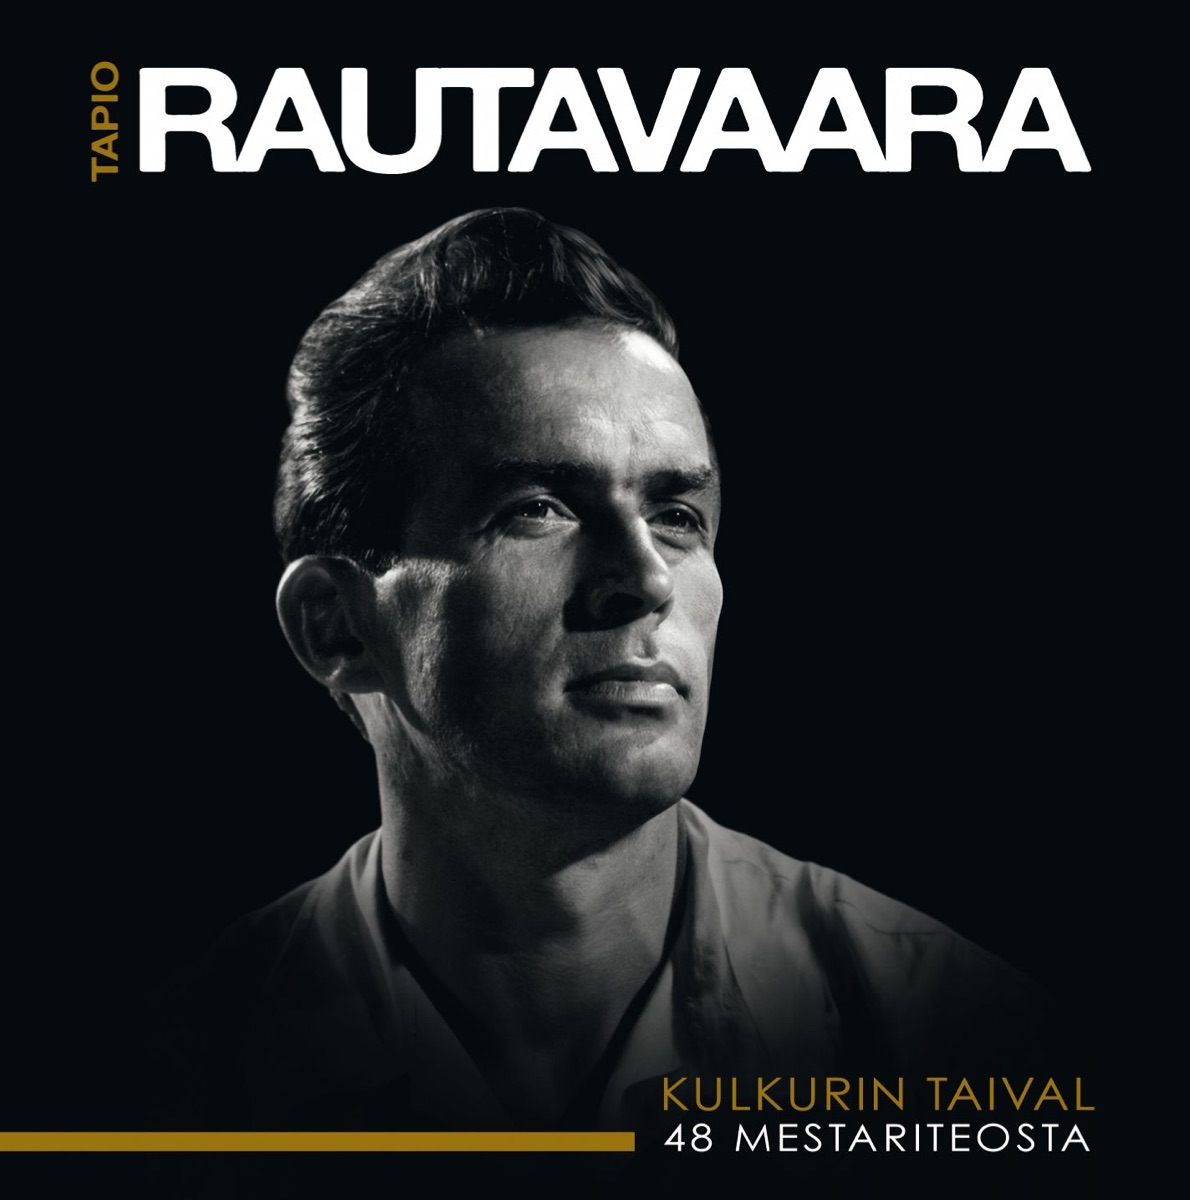 Peltoniemen Hintriikan surumarssi - EP by Tapio Rautavaara on Apple Music